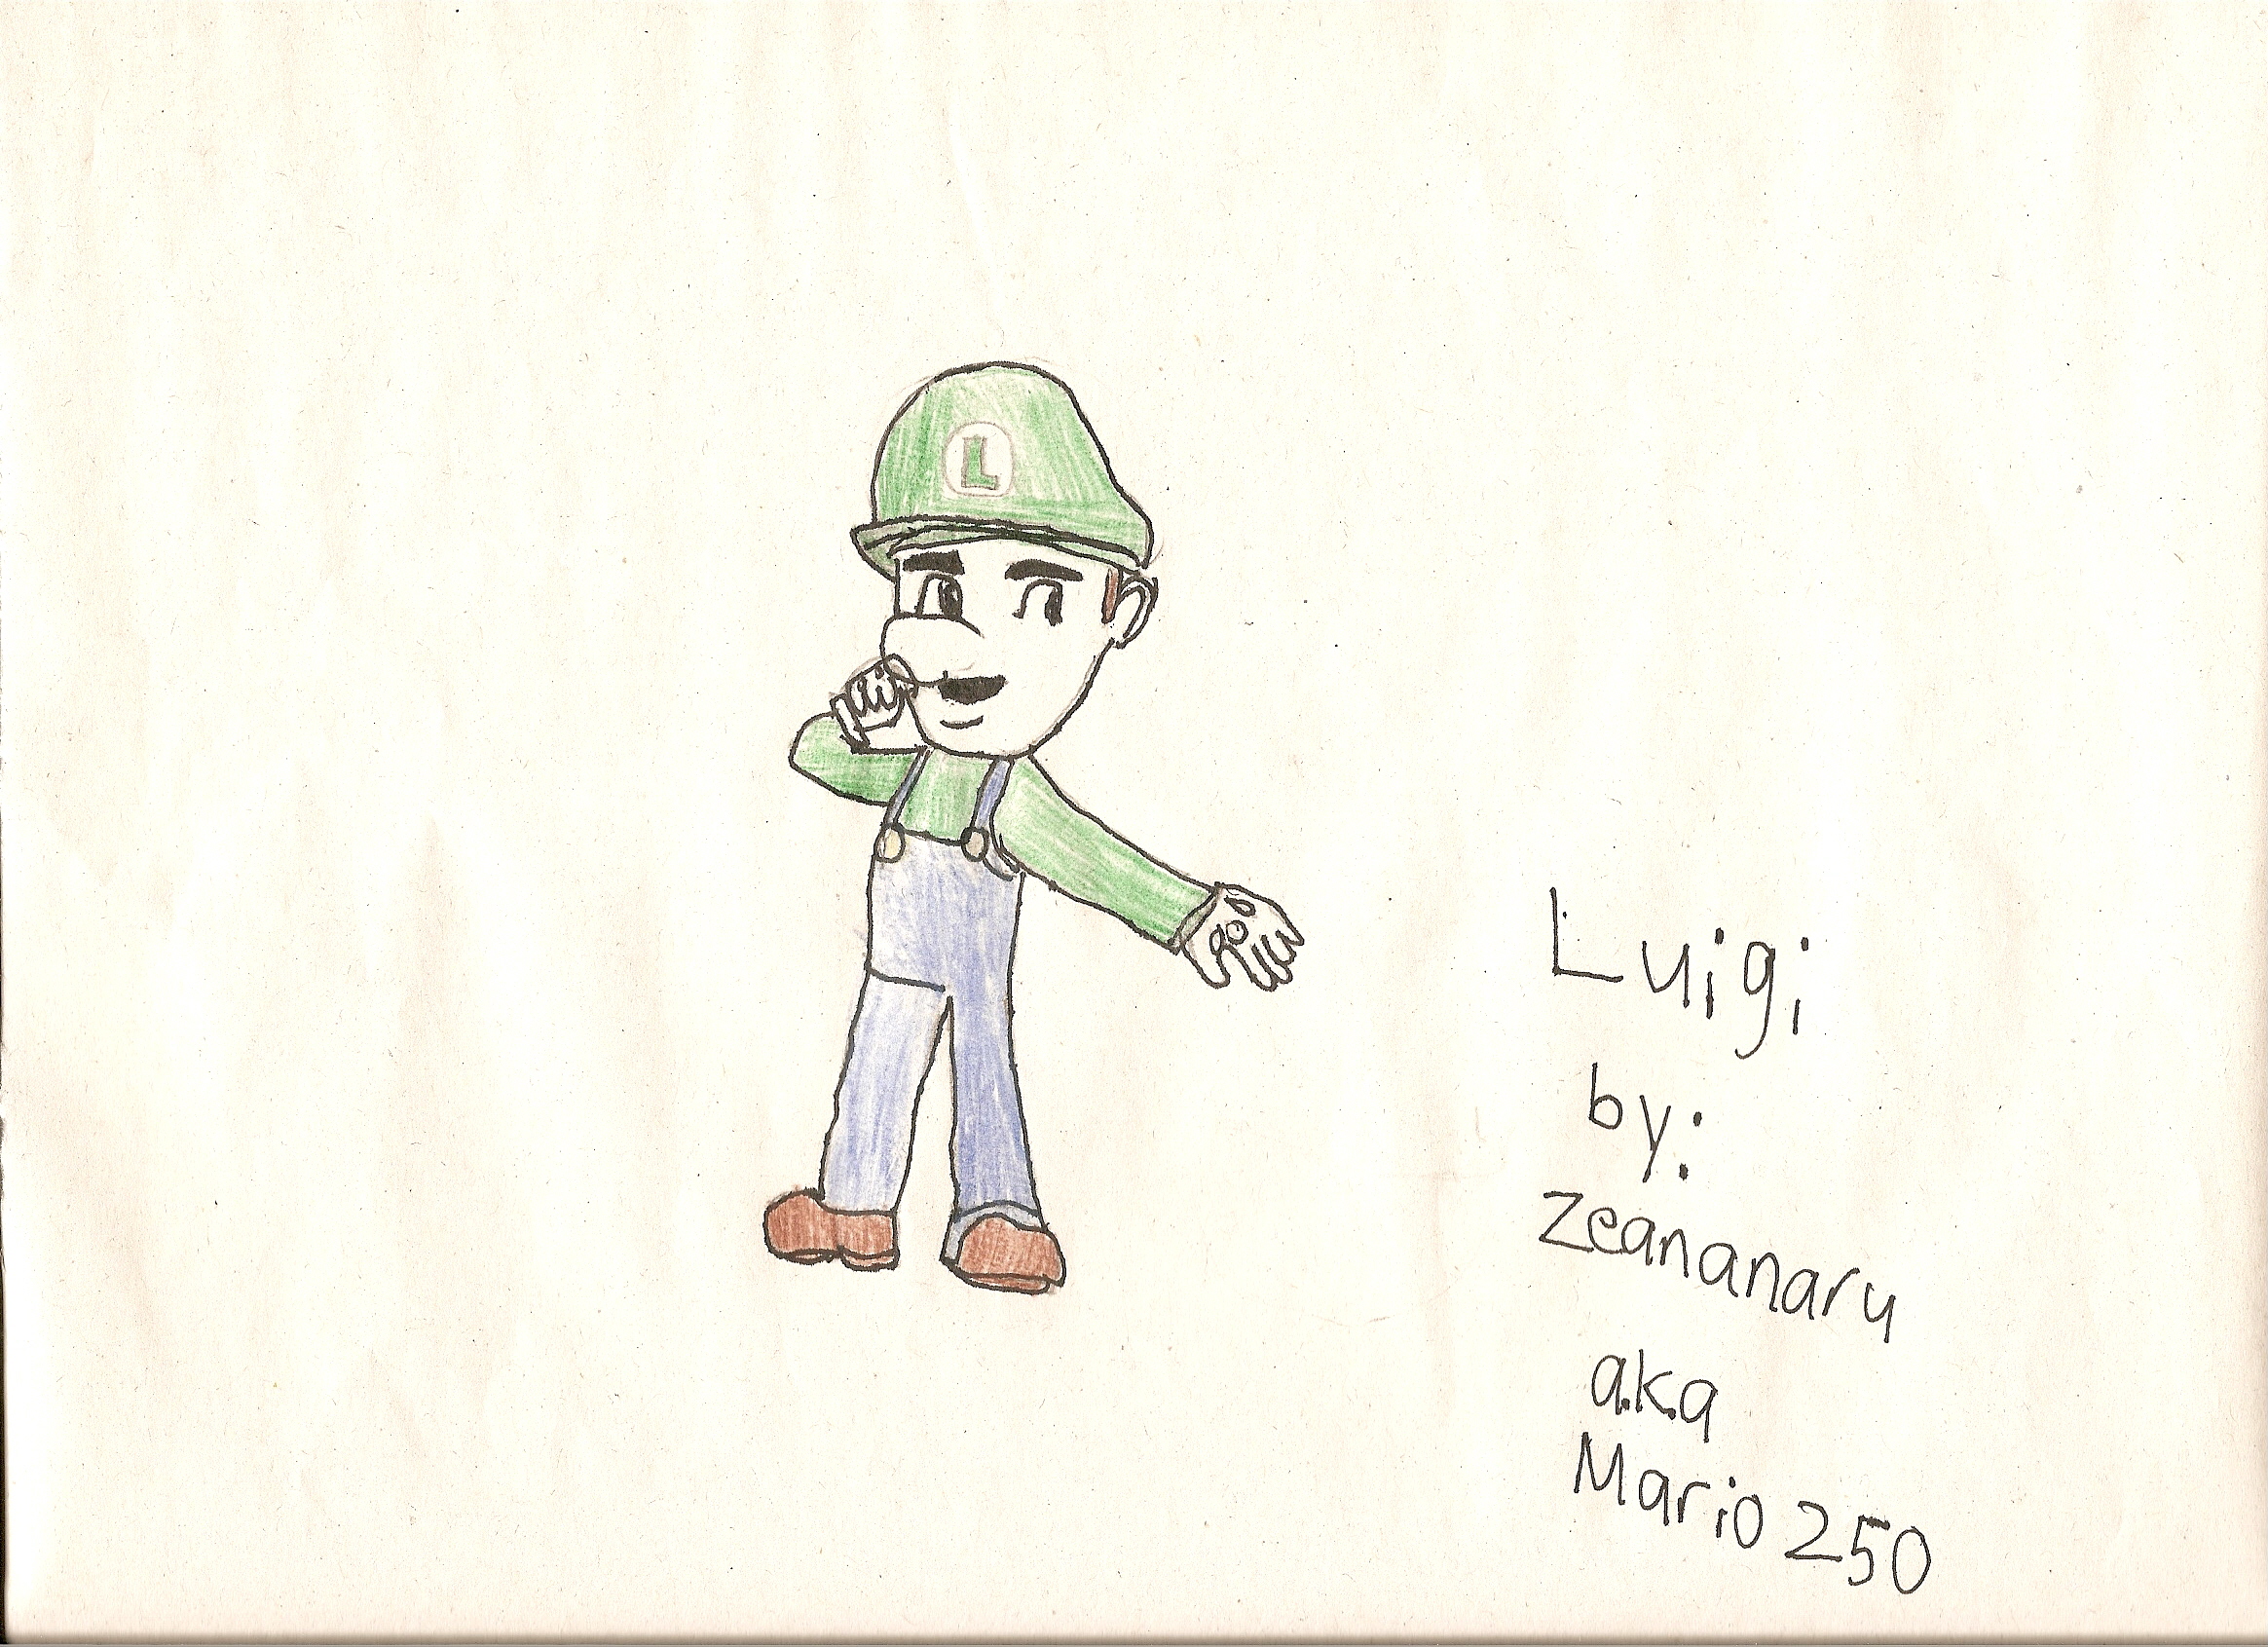 Luigi by Mario250